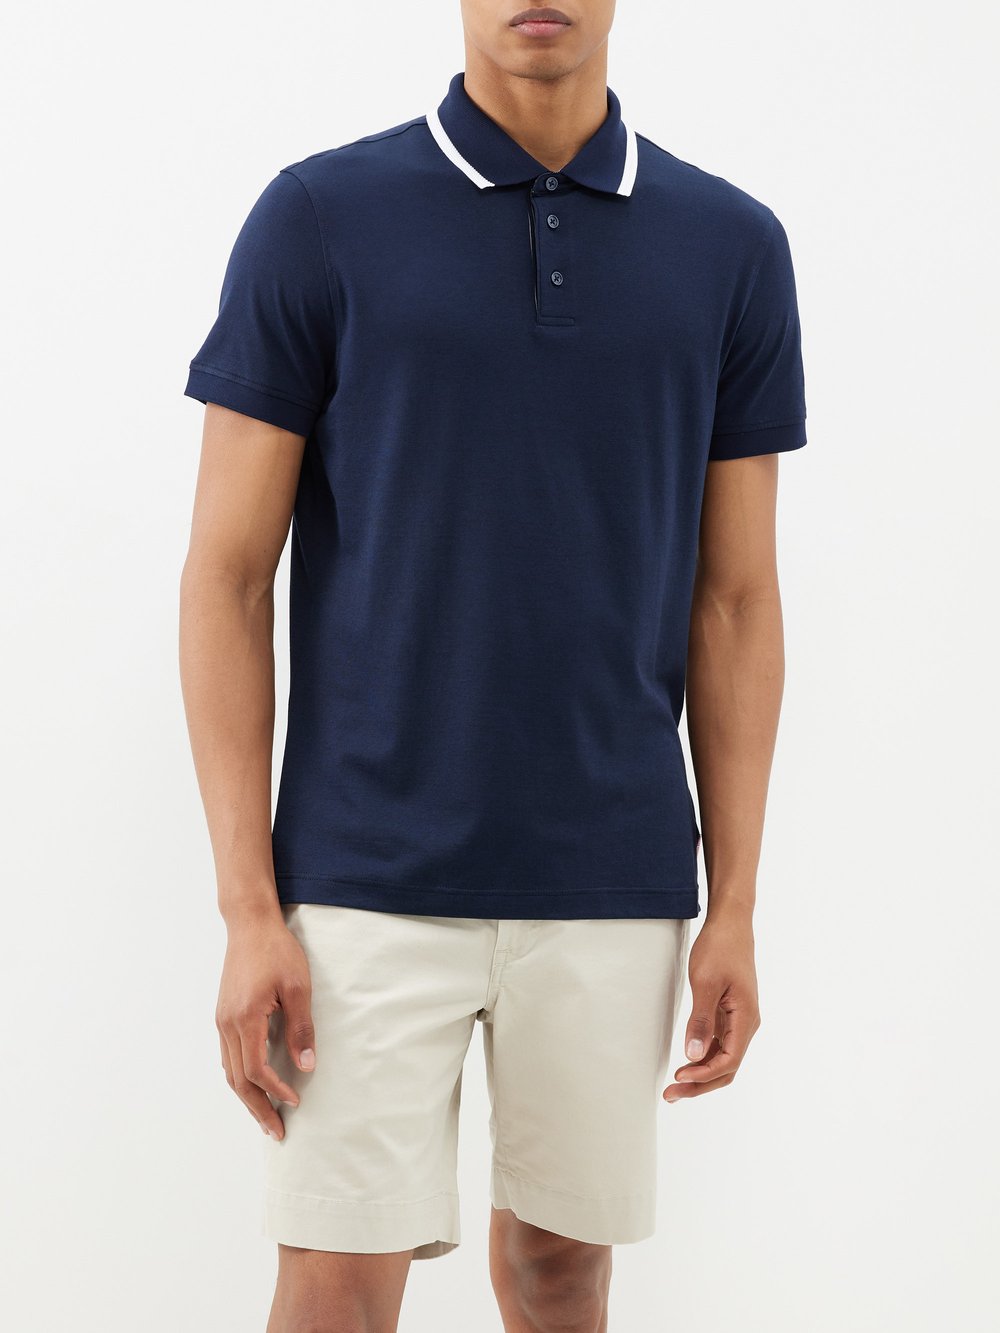 Рубашка-поло dominic из смесового хлопка Orlebar Brown, синий рубашка поло в белой оправе veilance